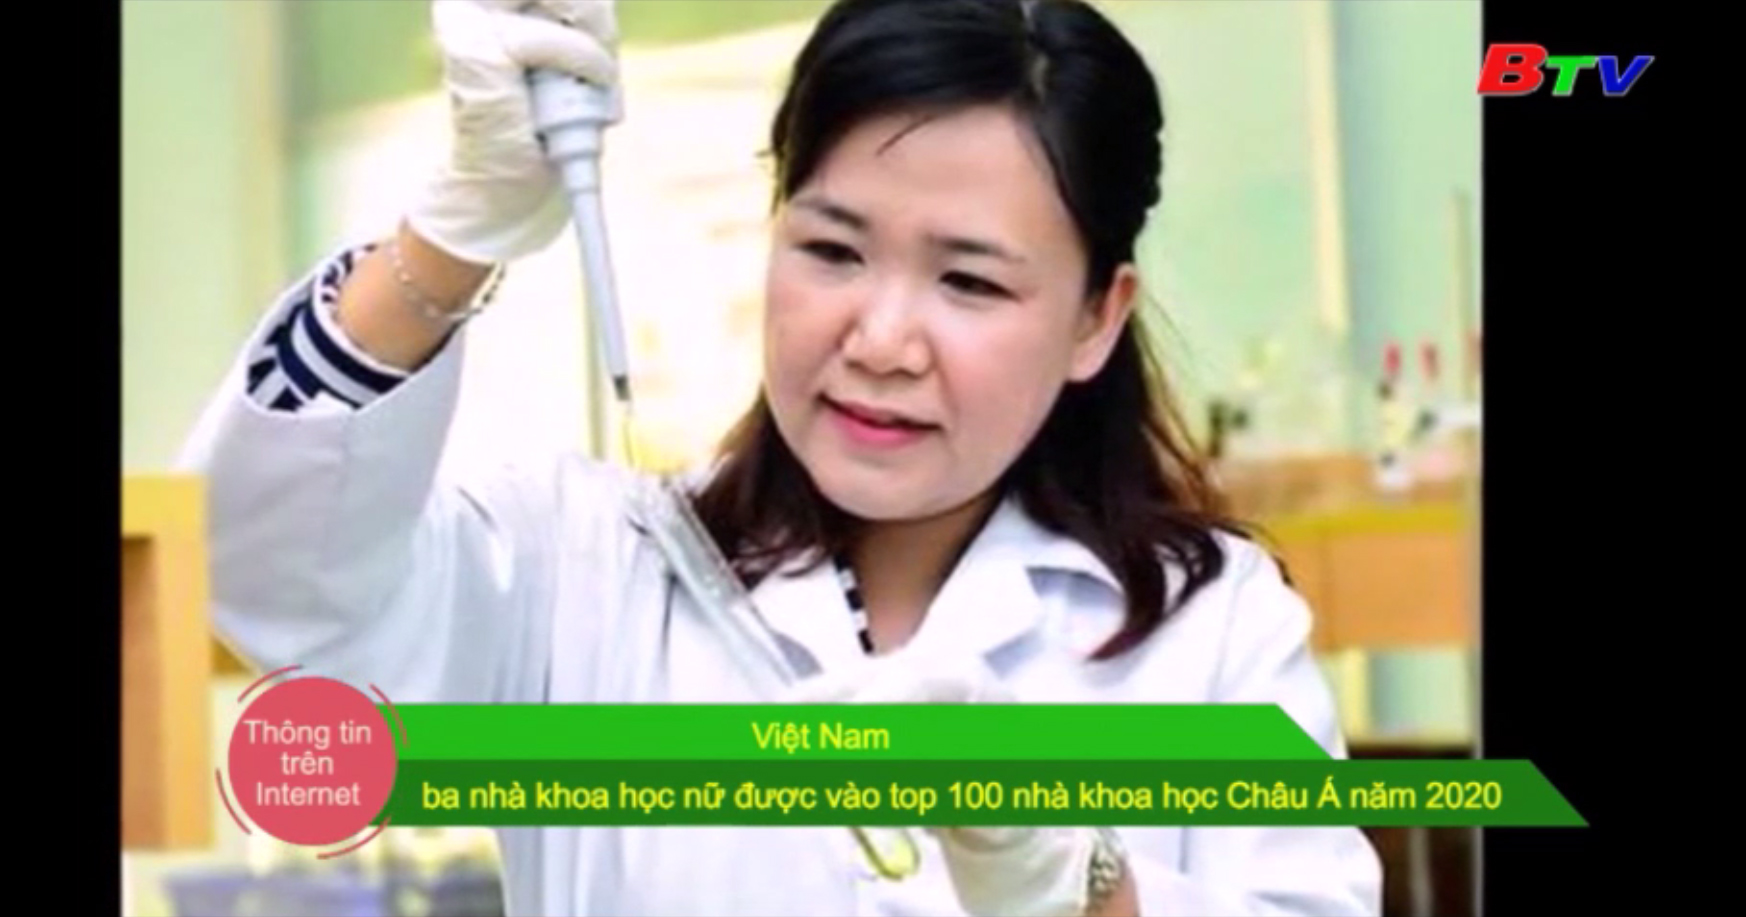 Việt Nam - 3 nhà khoa học nữ được vào top 100 nhà khoa học châu Á năm 2020